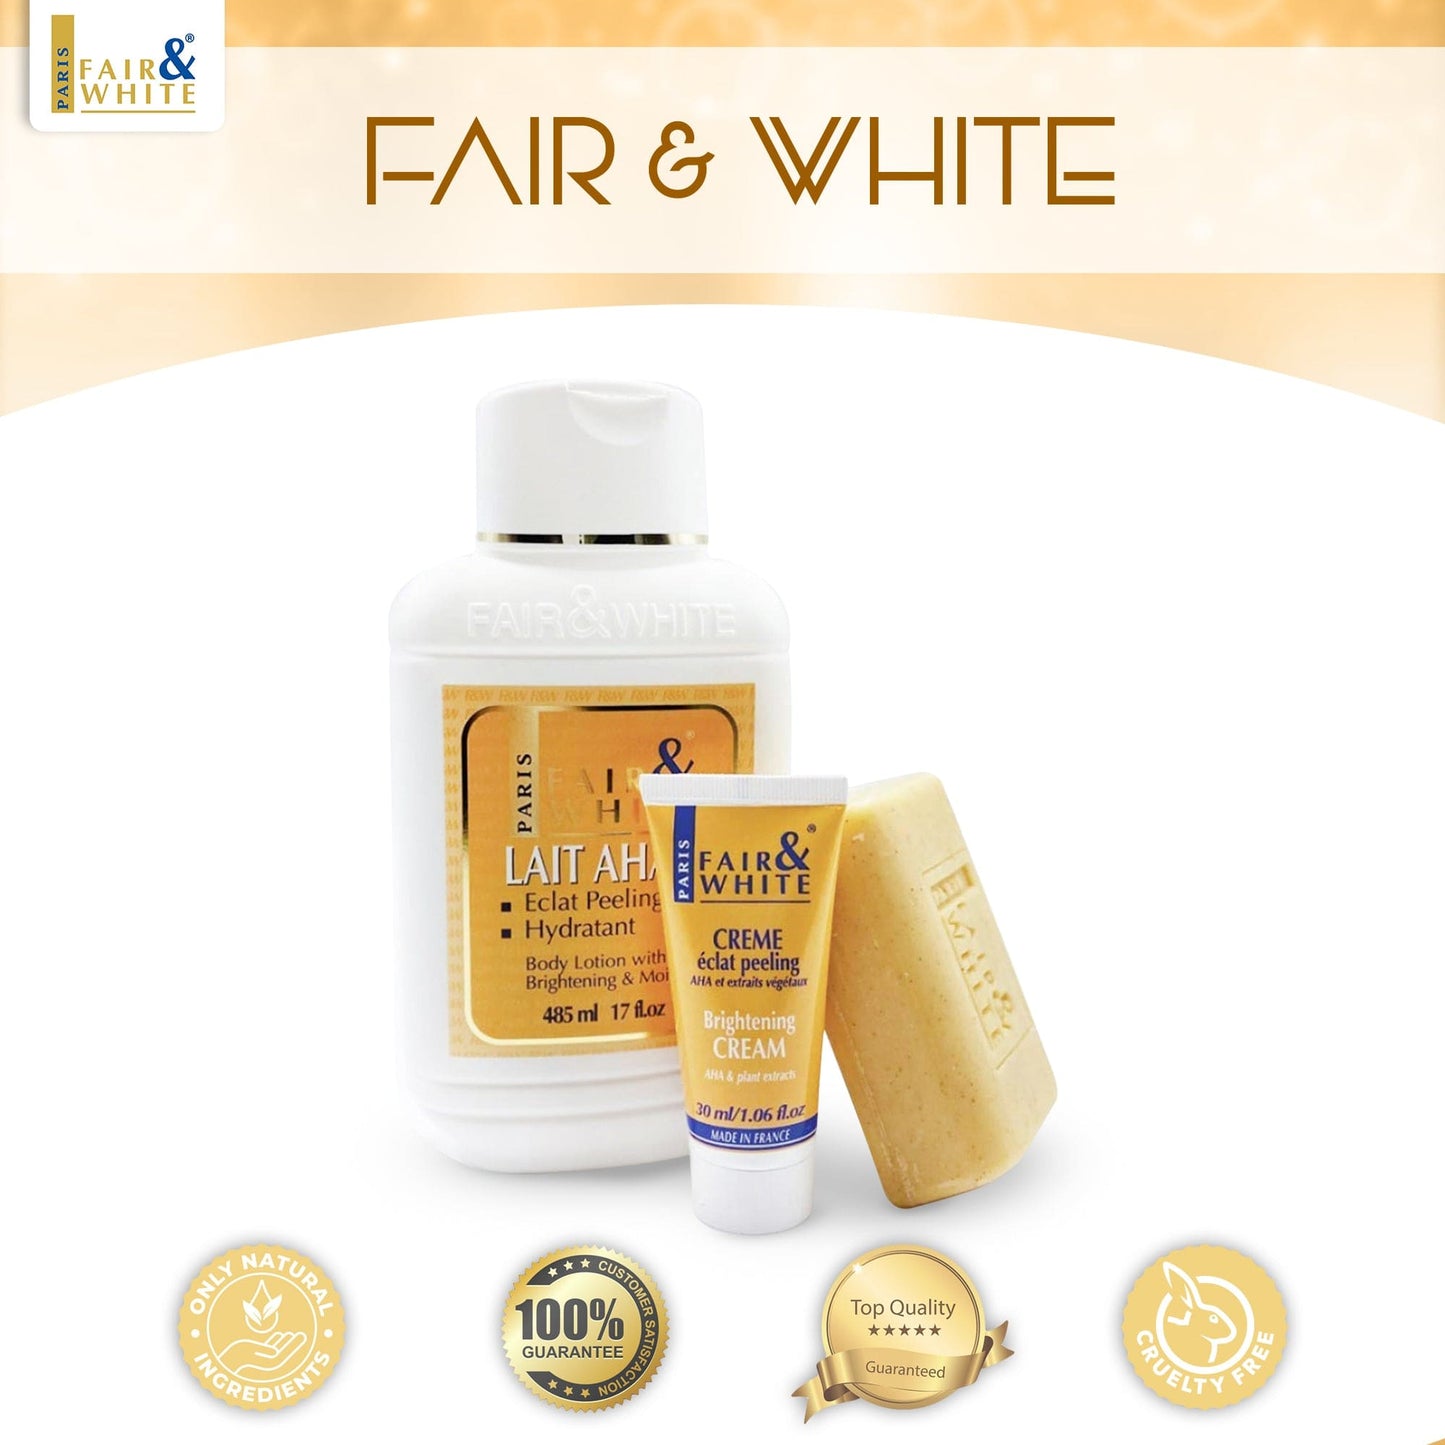 Fair & White Original AHA Exfoliating Soap - 200g / 7 oz